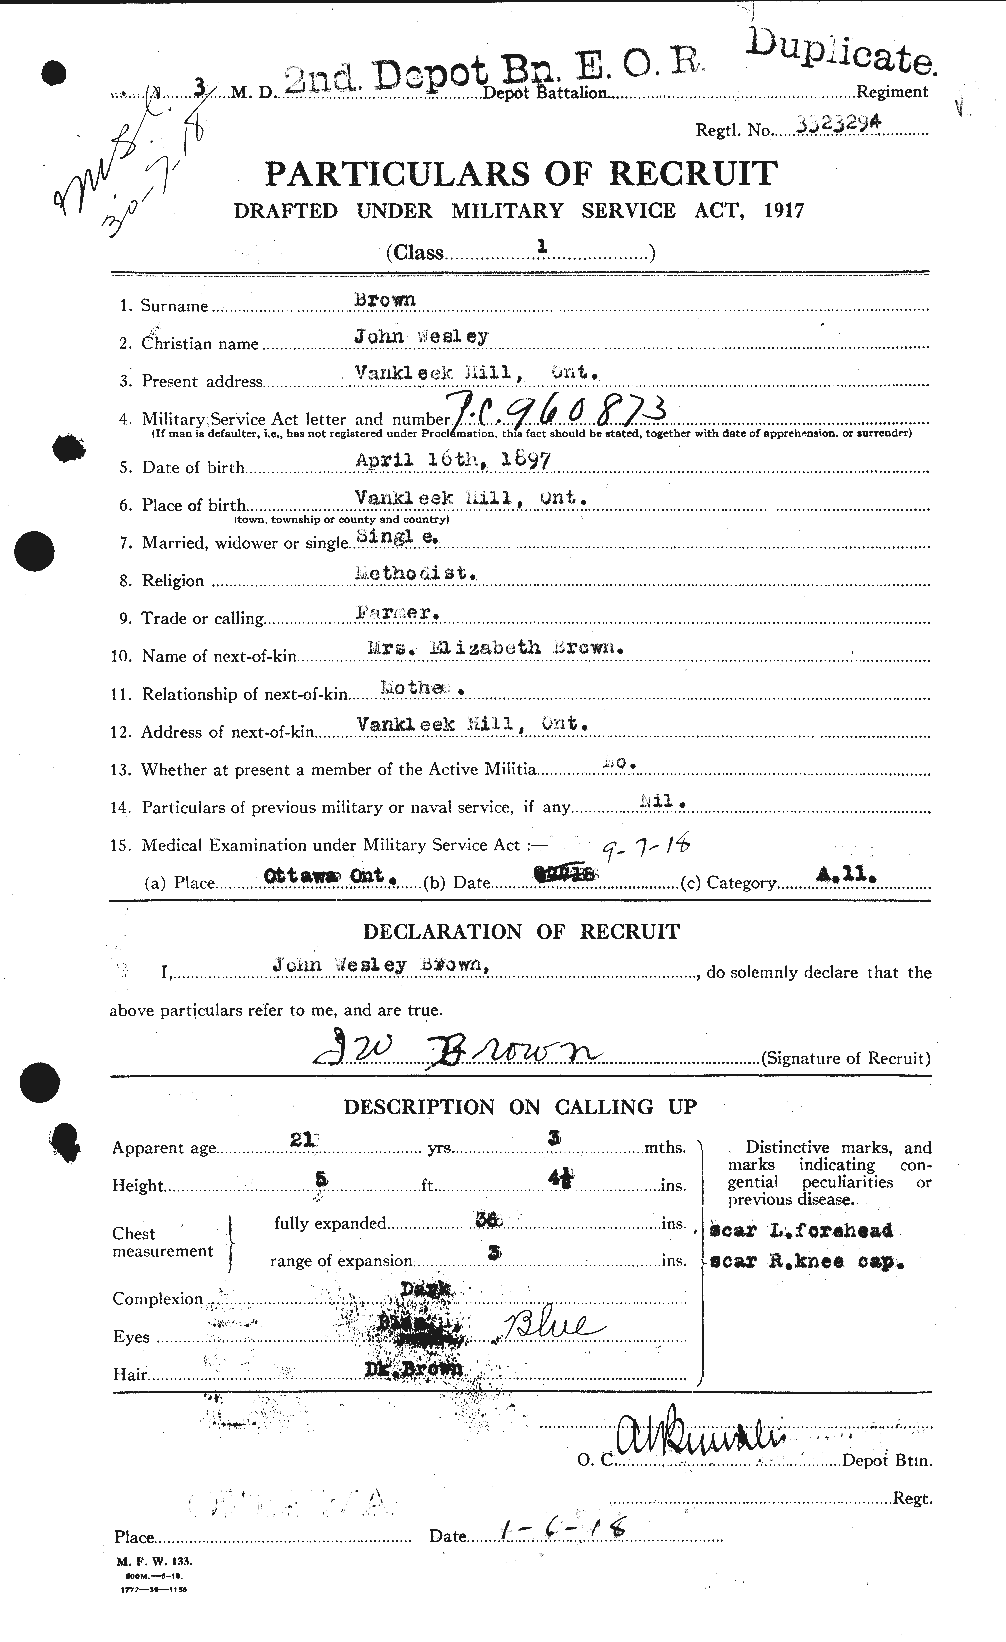 Dossiers du Personnel de la Première Guerre mondiale - CEC 265898a